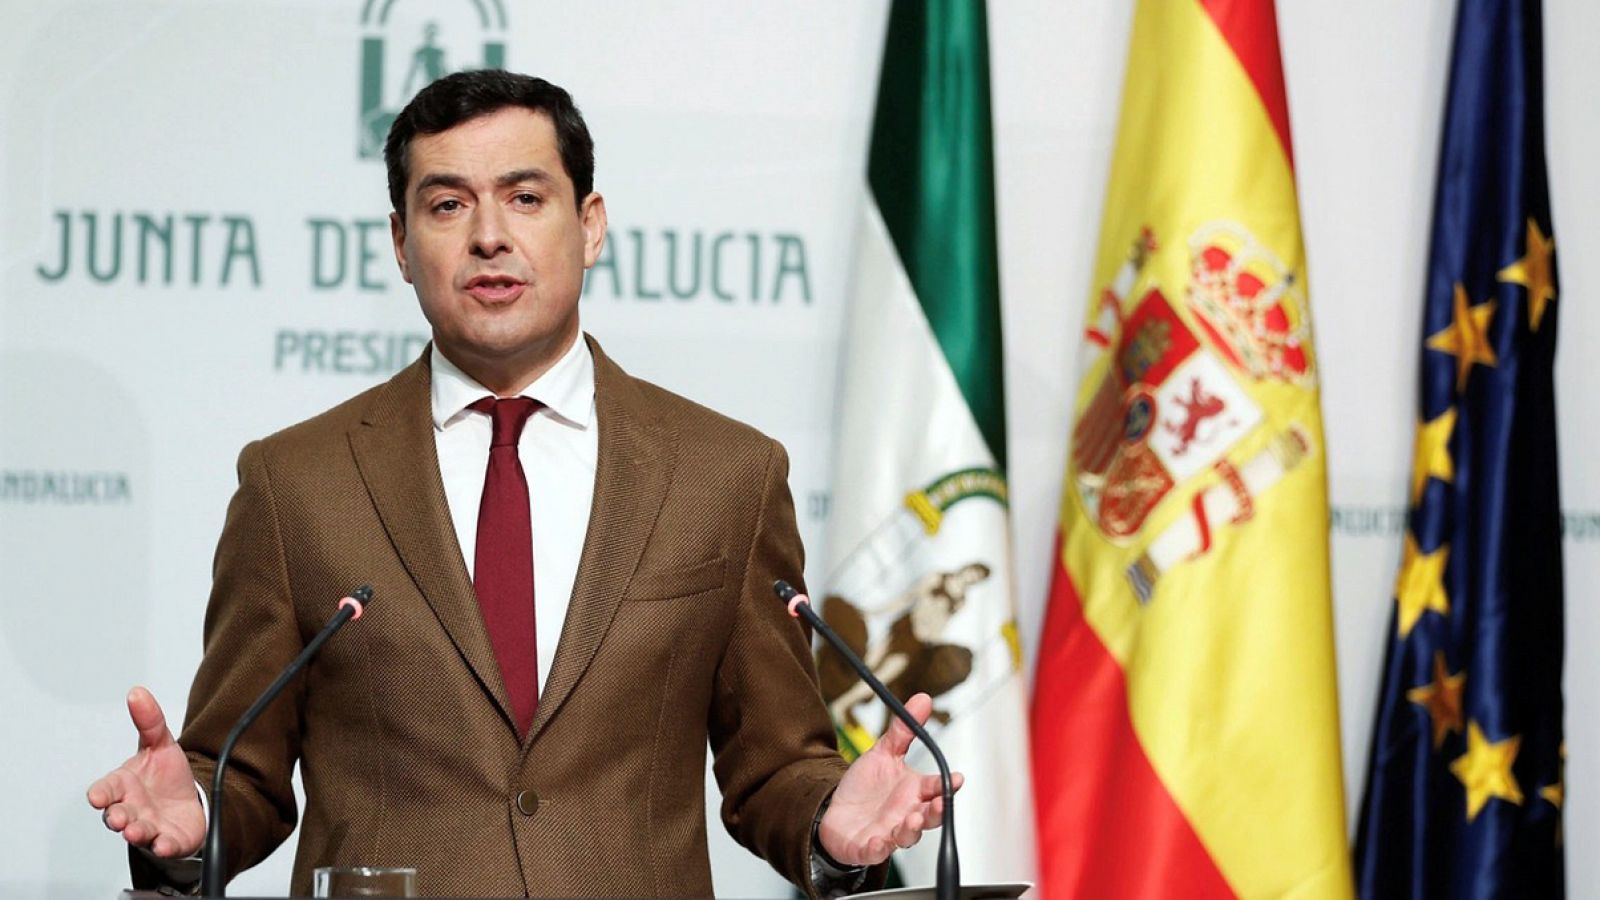 El presidente de la Junta de Andalucía, Juanma Moreno, durante la rueda de prensa en la que ha anunciado la composición de su Gobierno. EFE/José Manuel Vidal